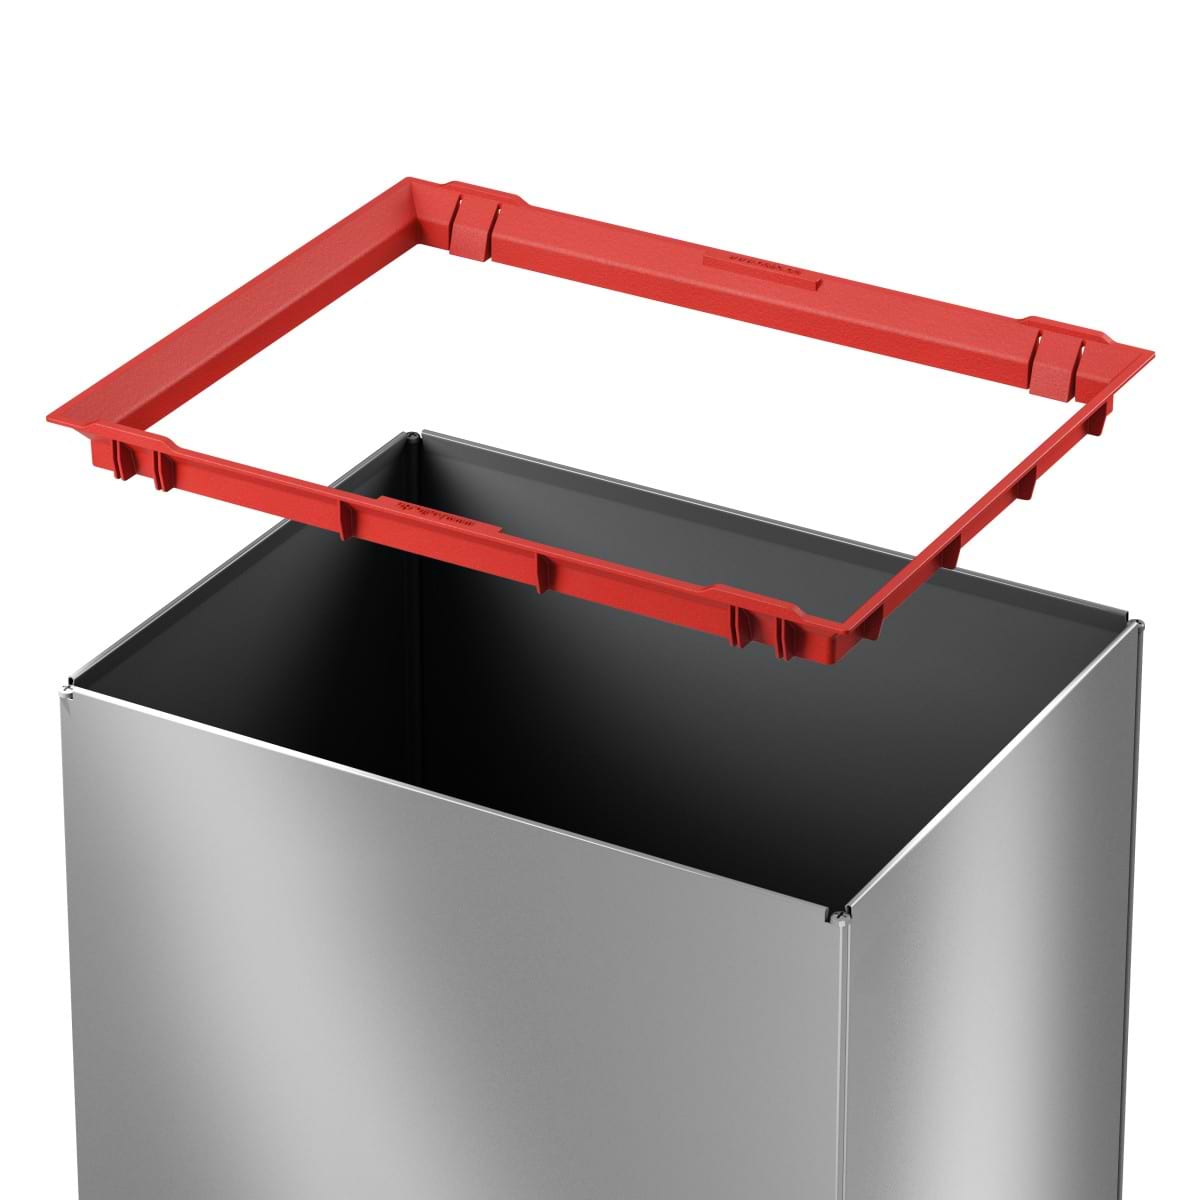 פח אשפה מלבני 52 ליטר למטבחים ומשרדים Big-Box Swing XL HAILO - צבע כסוף 